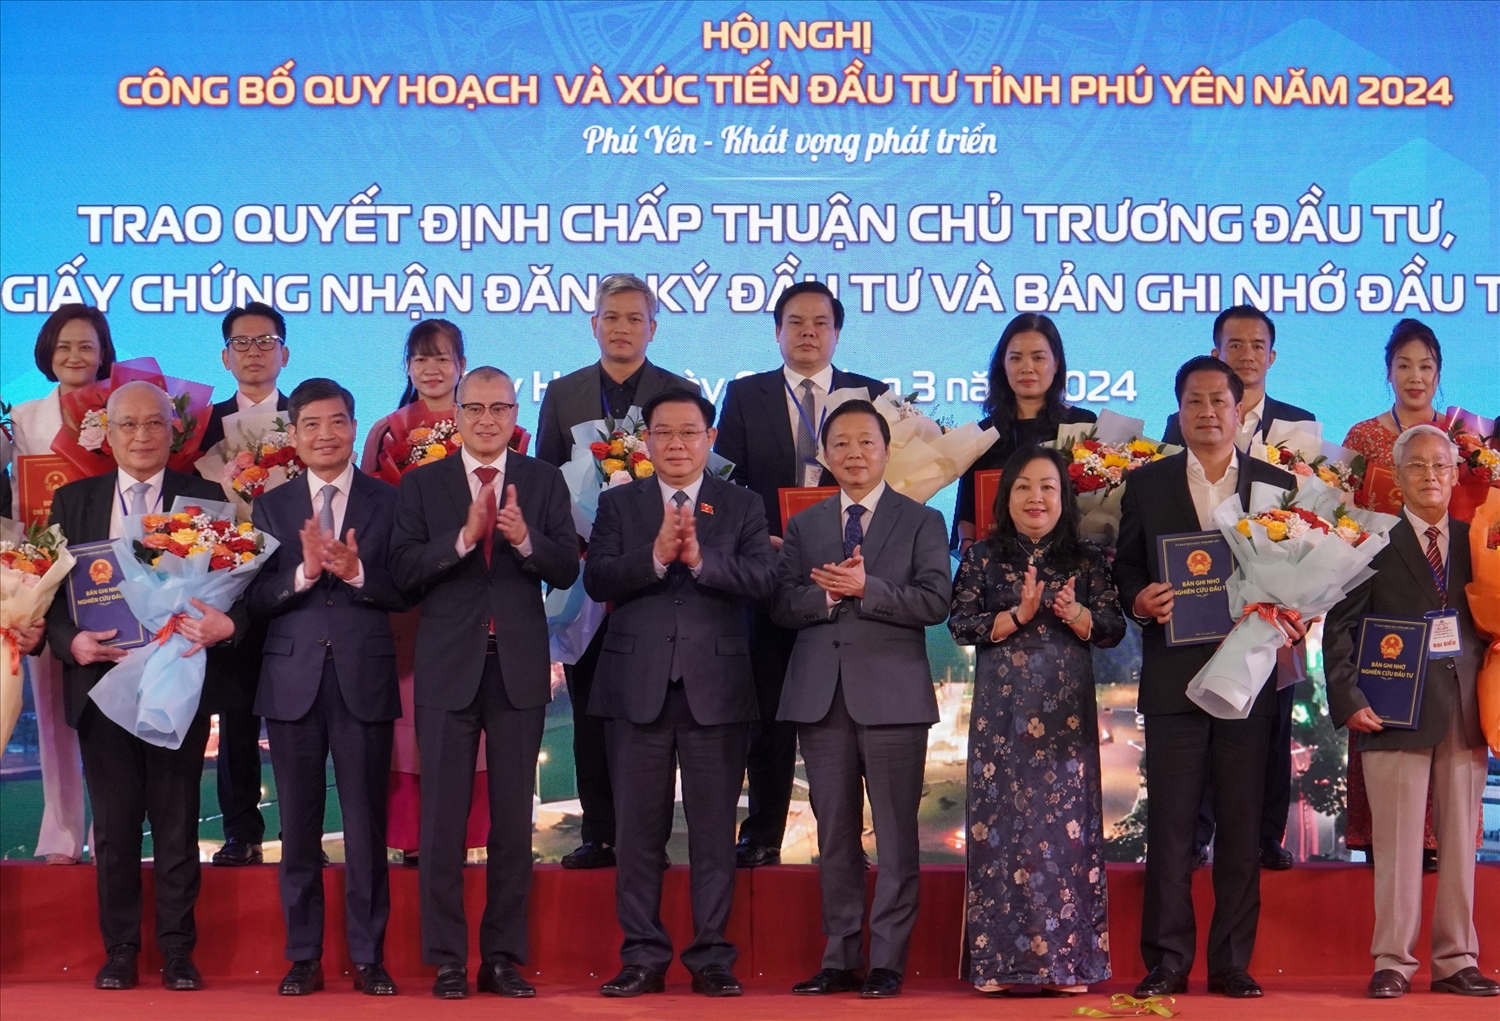 Trao quyết định chấp thuận chủ trương đầu tư, giấy chứng nhận đăng ký đầu tư và bảng ghi nhớ đầu tư tỉnh Phú Yên